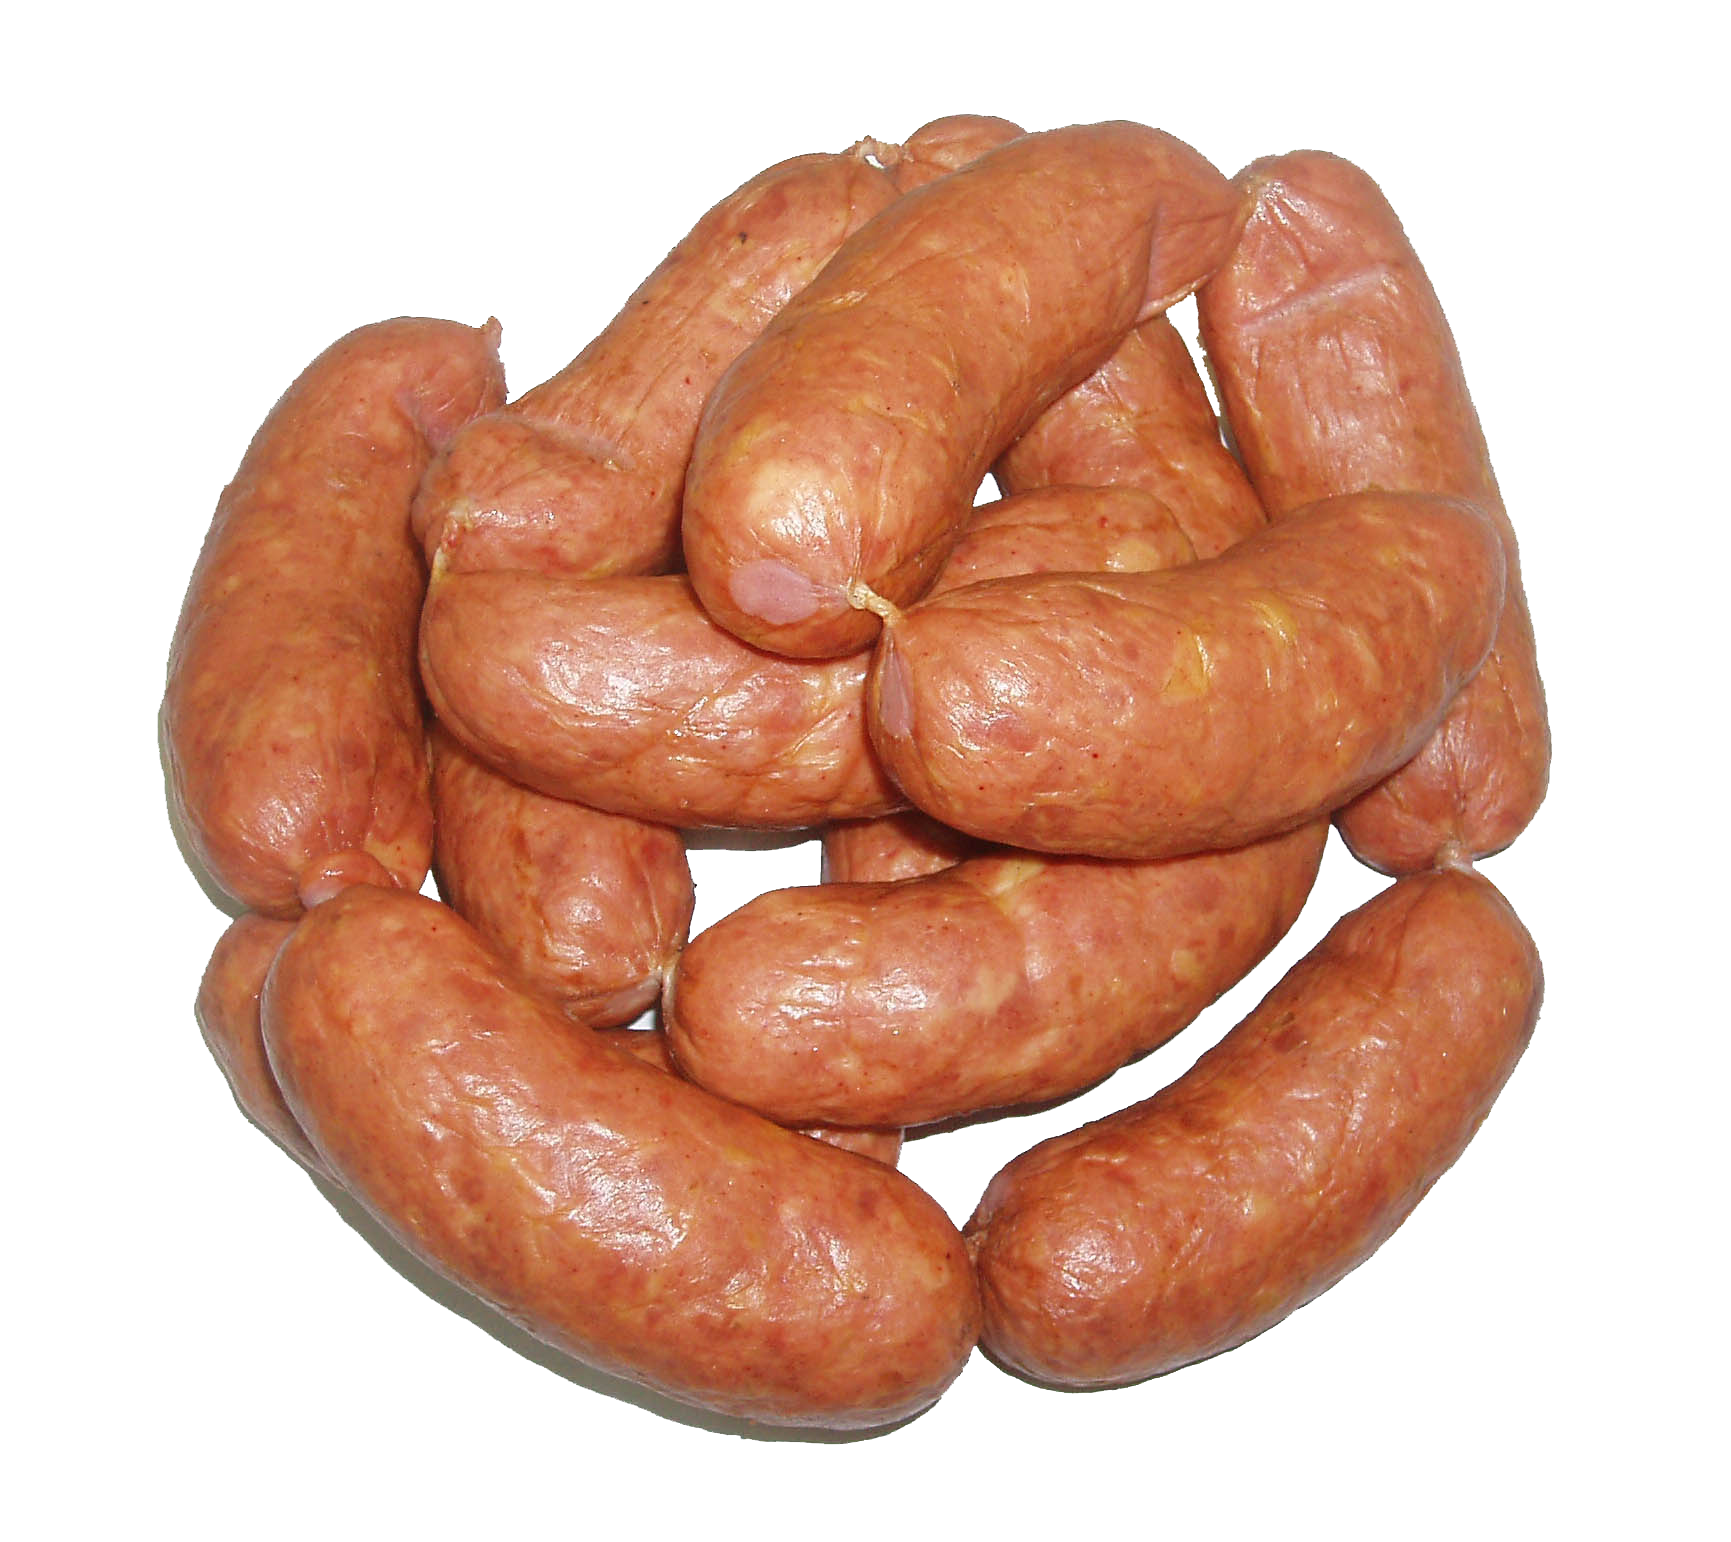 Download PNG image - Sausage 